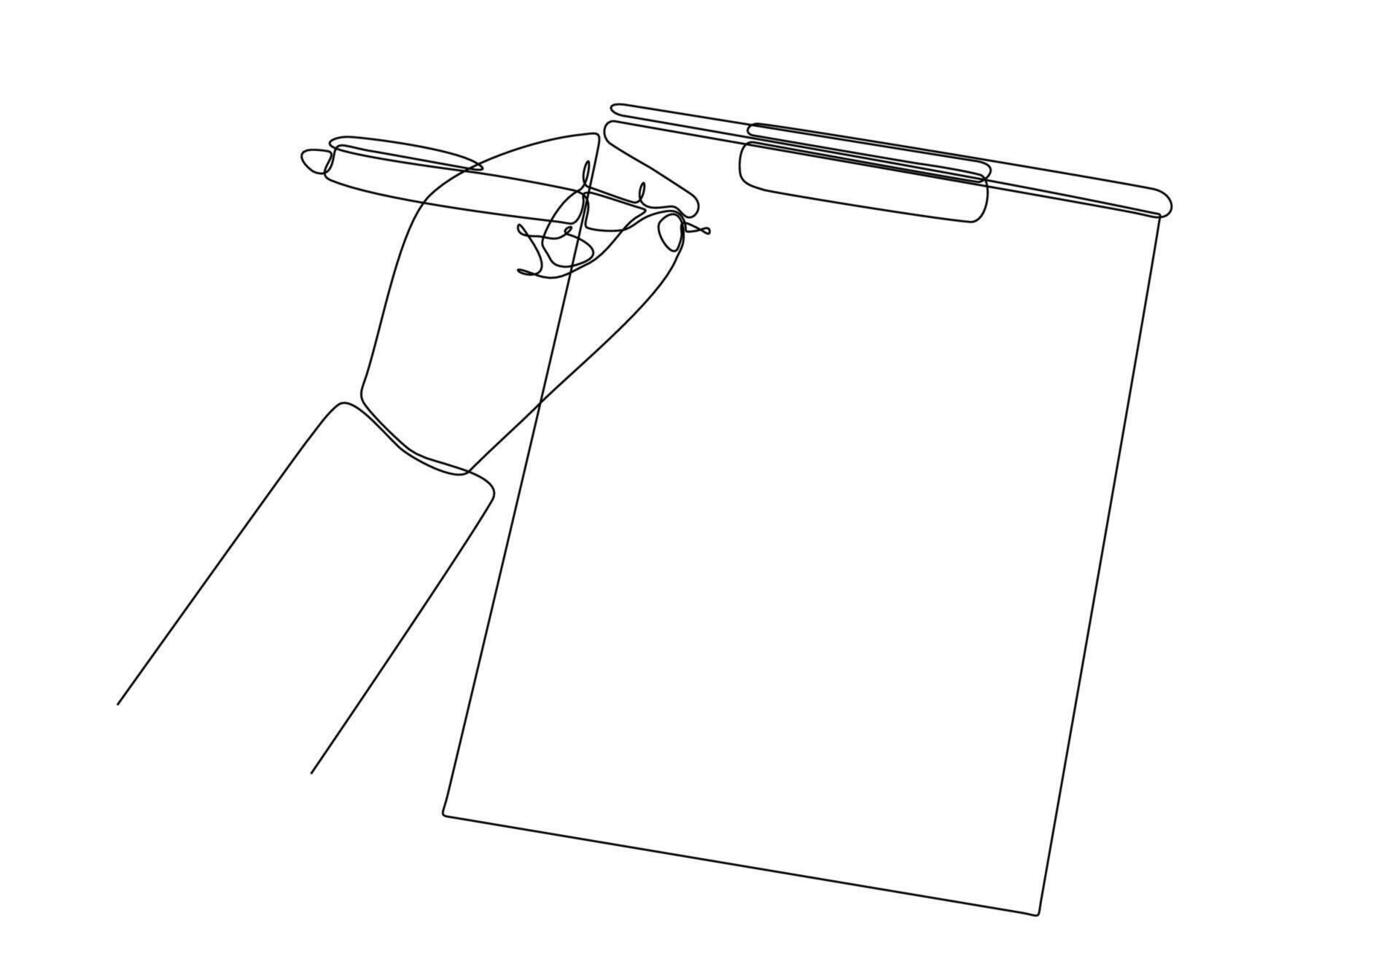 dibujo de línea continua de la mano de un hombre escribiendo algo en un bloc de notas aislado en una ilustración de vector de fondo blanco